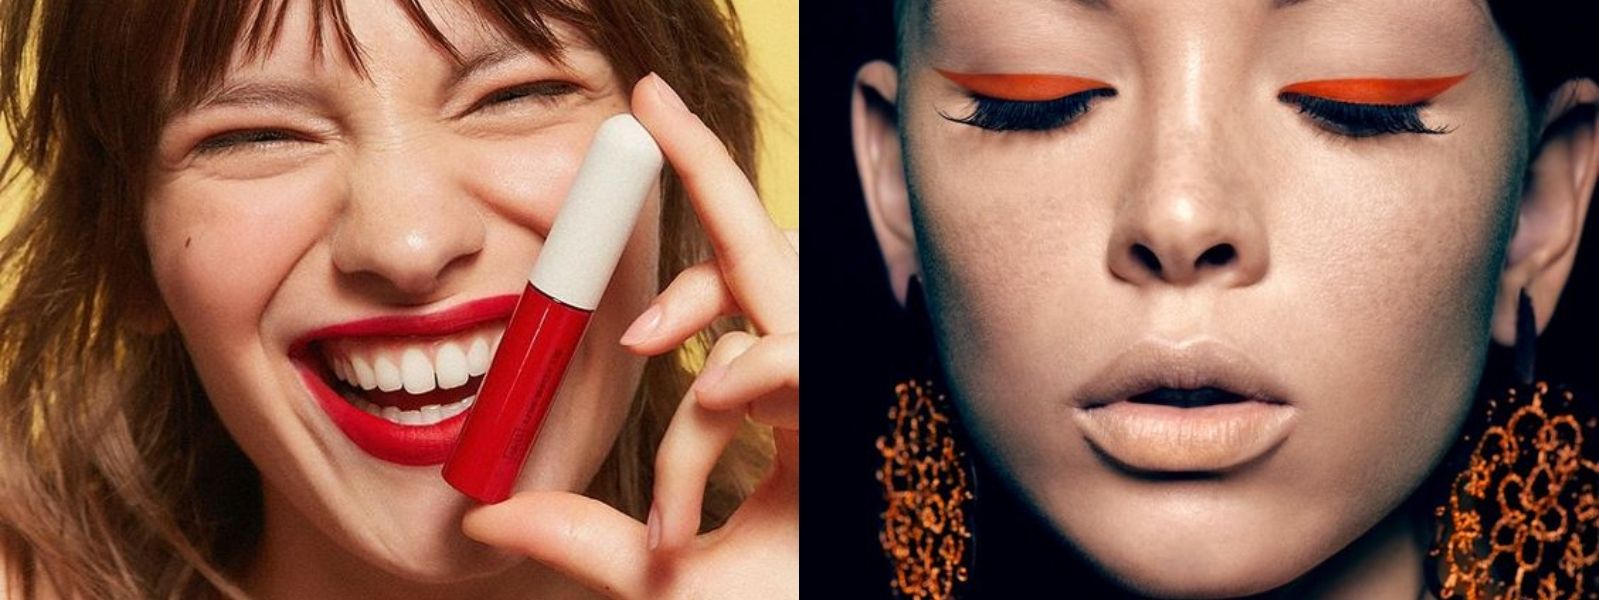 images easyblog articles 2309 ta lipstick tou xeimona 2020 9dd76ccc